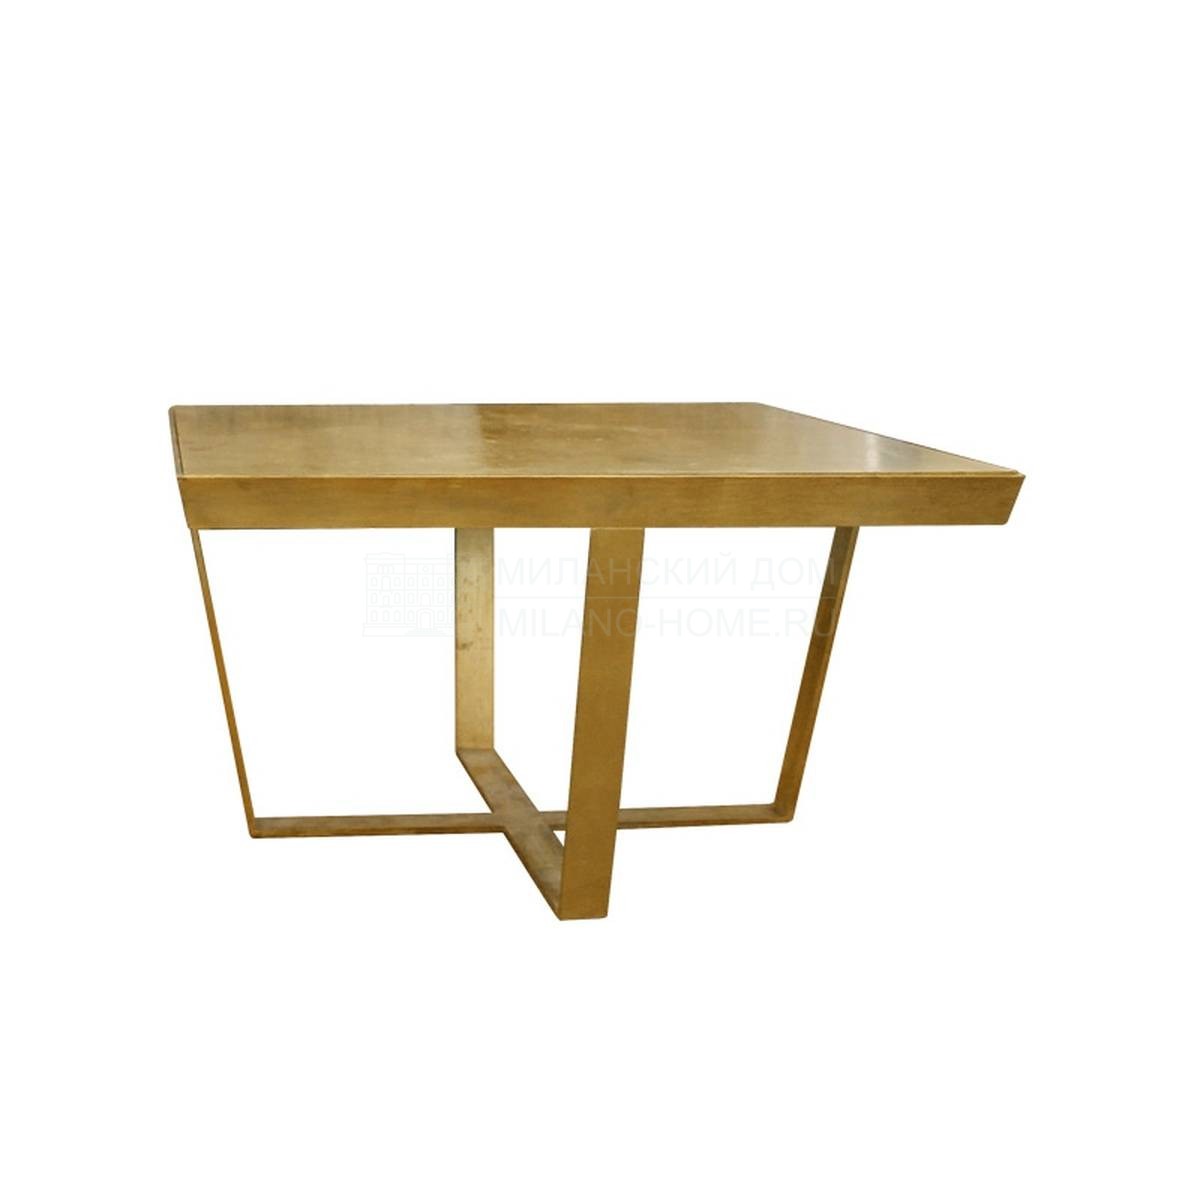 Кофейный столик Foglia/ table из Италии фабрики SOFTHOUSE